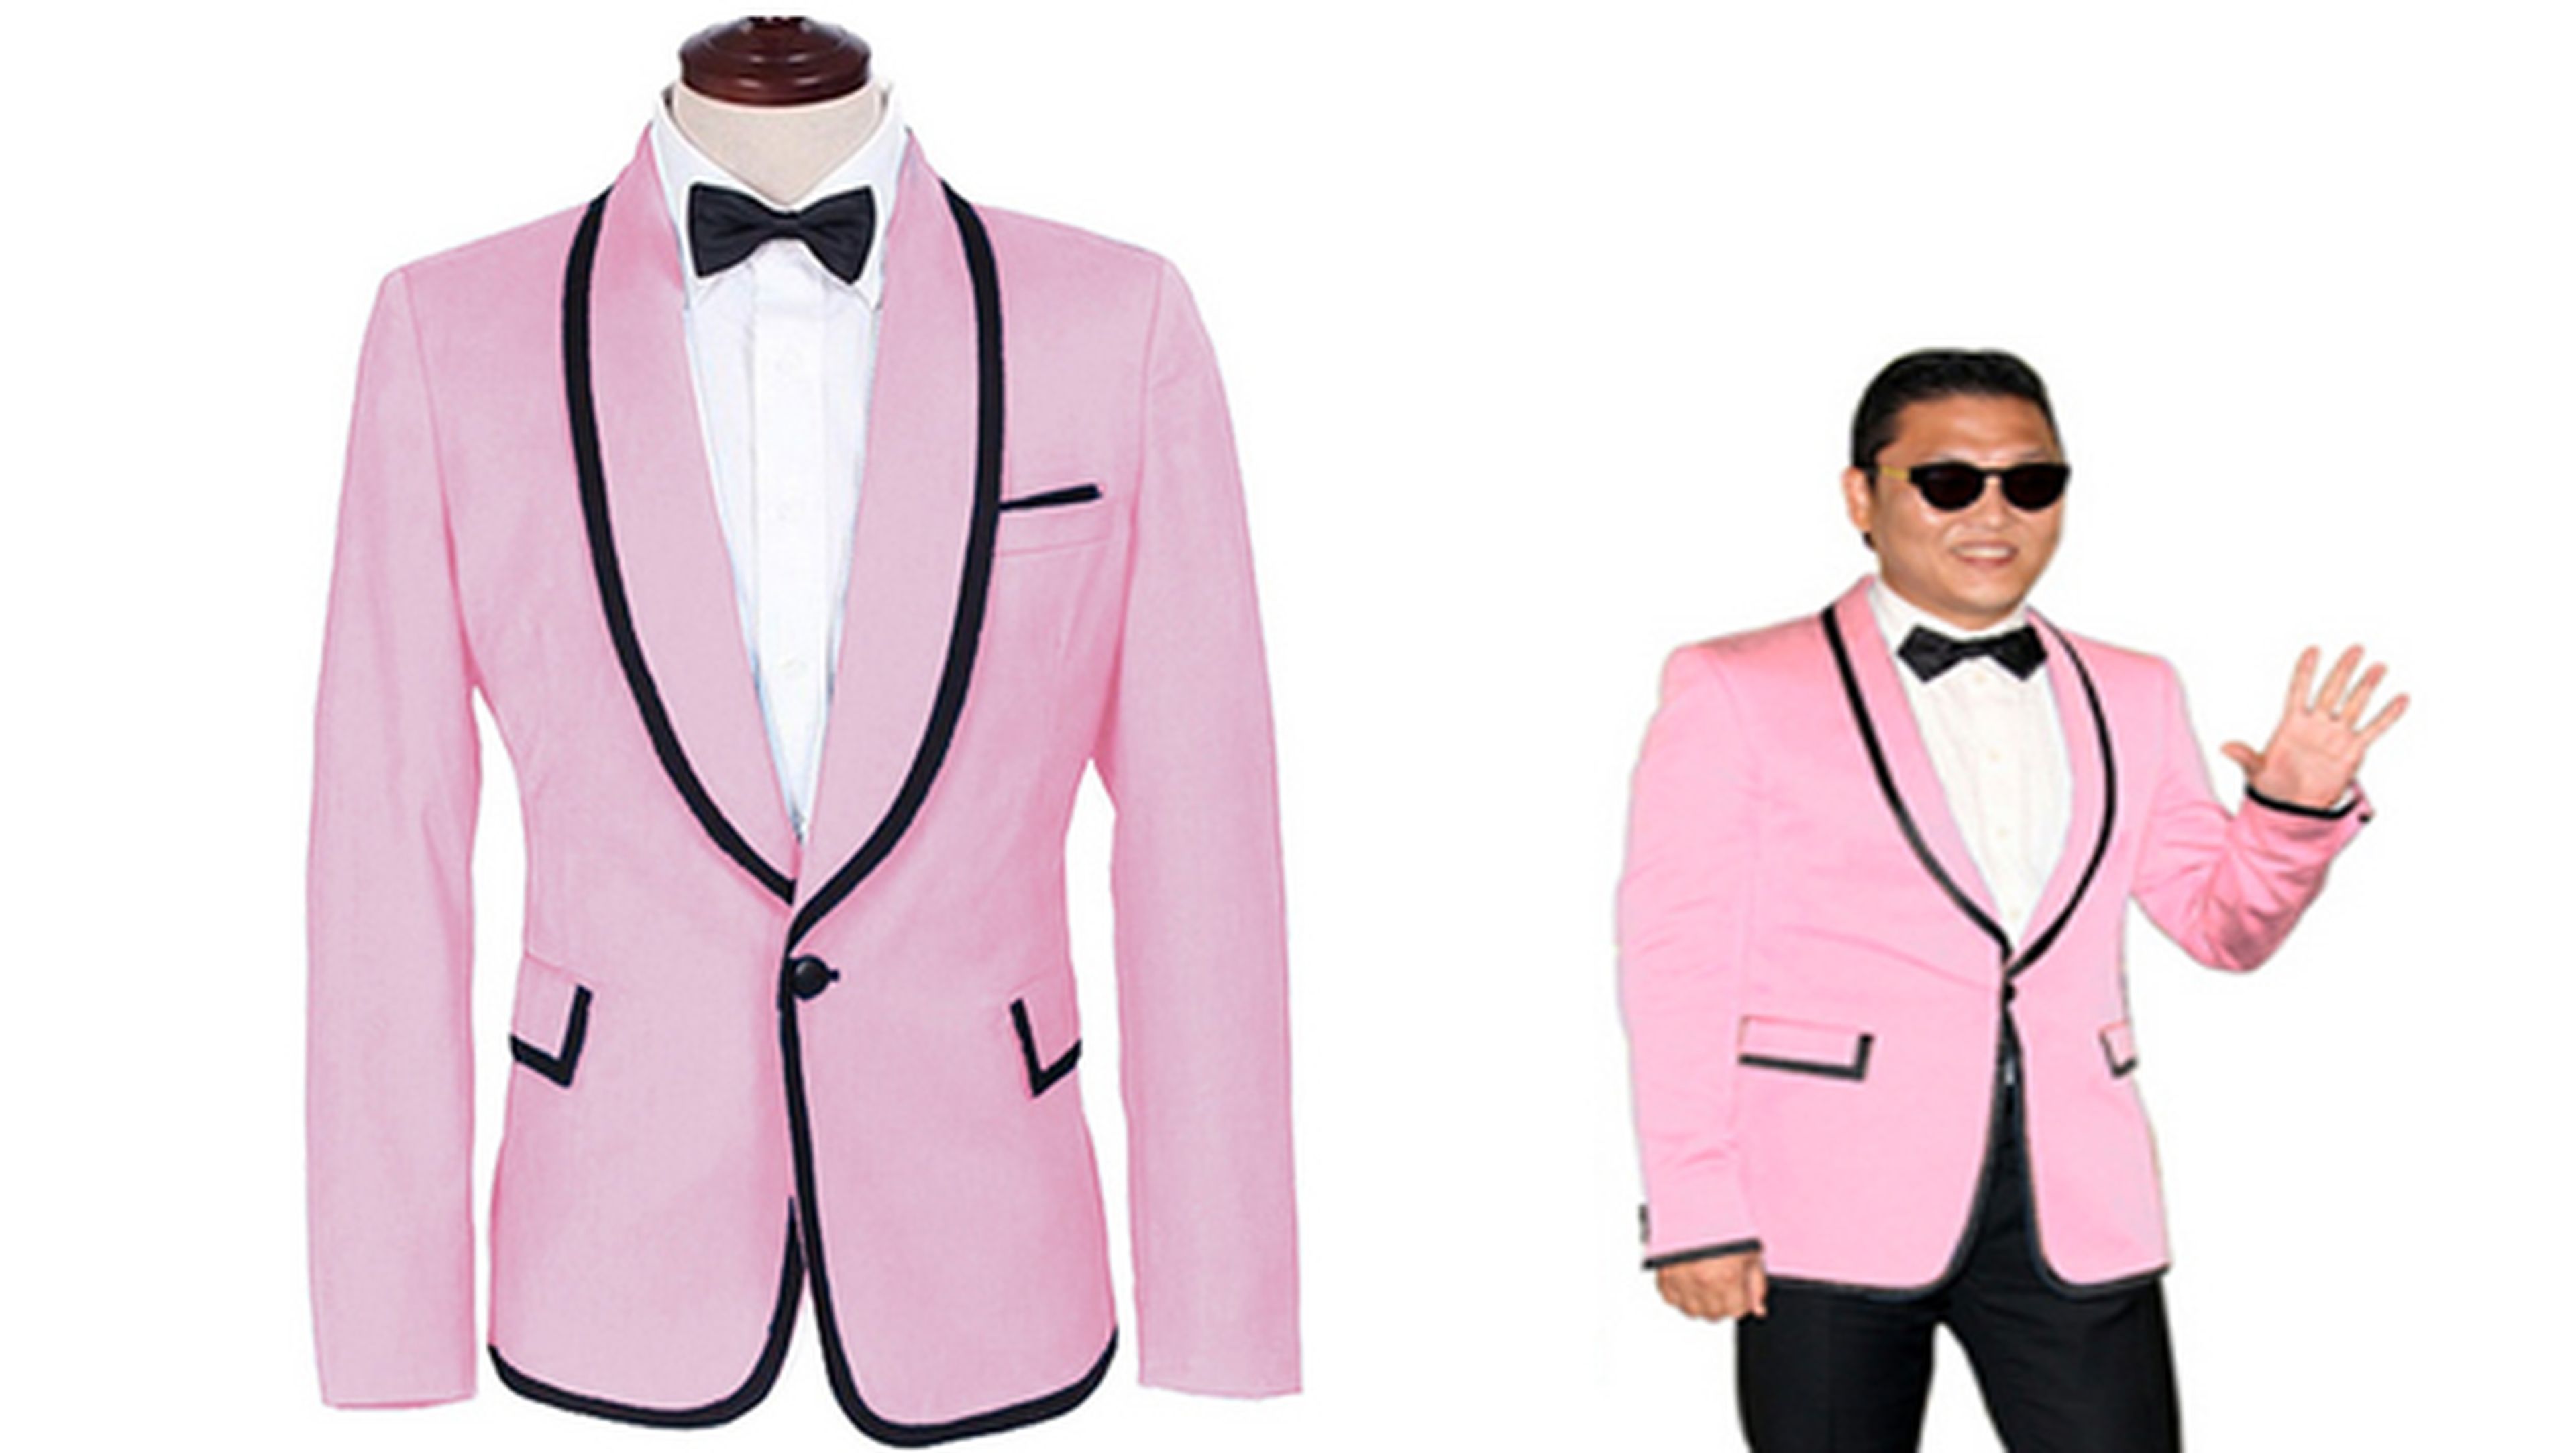 Disfraz Psy, de Gangnam style